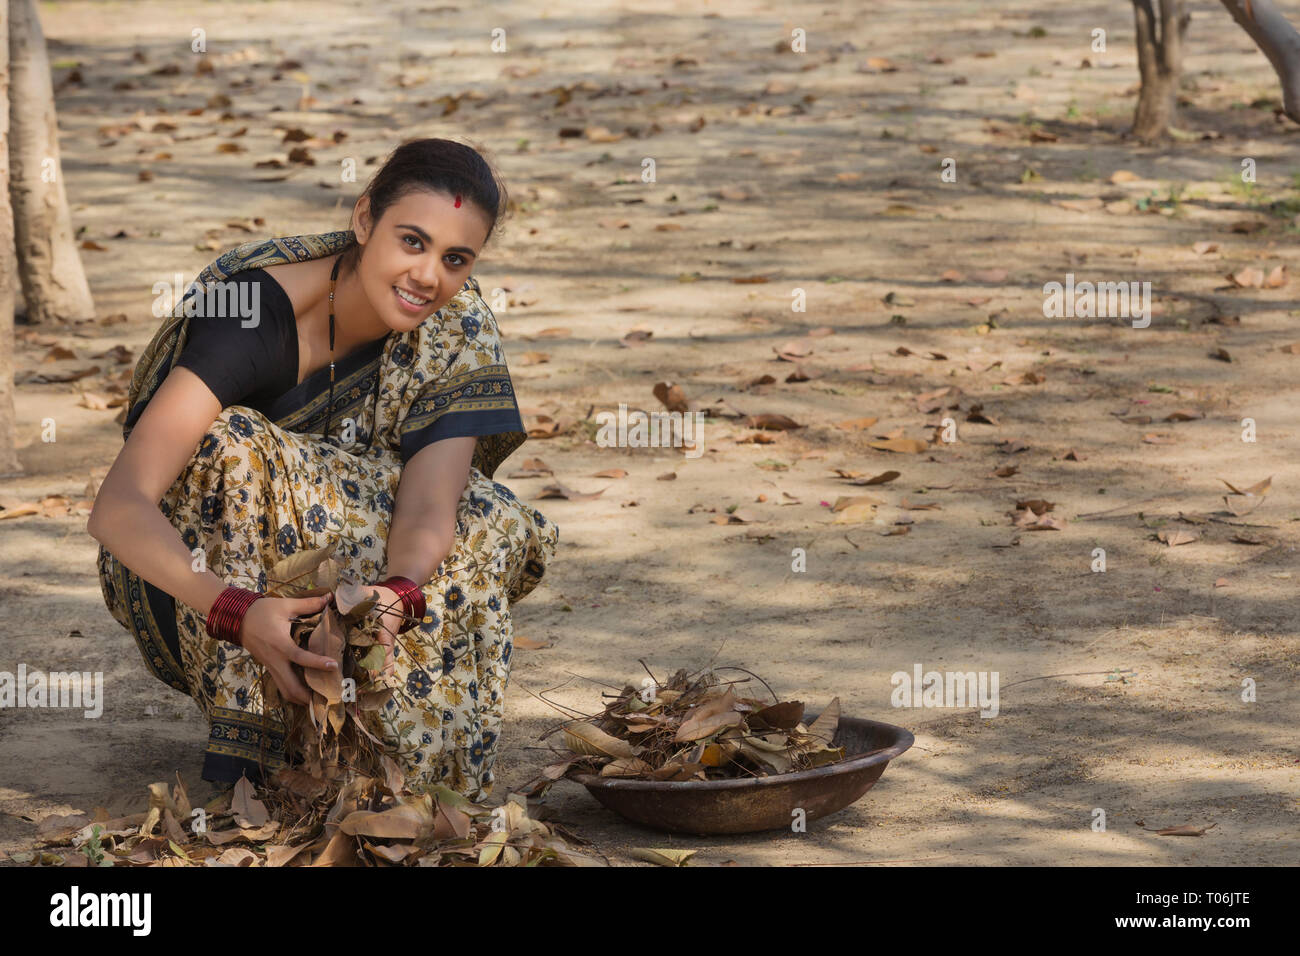 Ländliche Frau, gekleidet in Saree sammeln getrocknete Blätter vom Boden in einem Eisen Gold Pan. Stockfoto